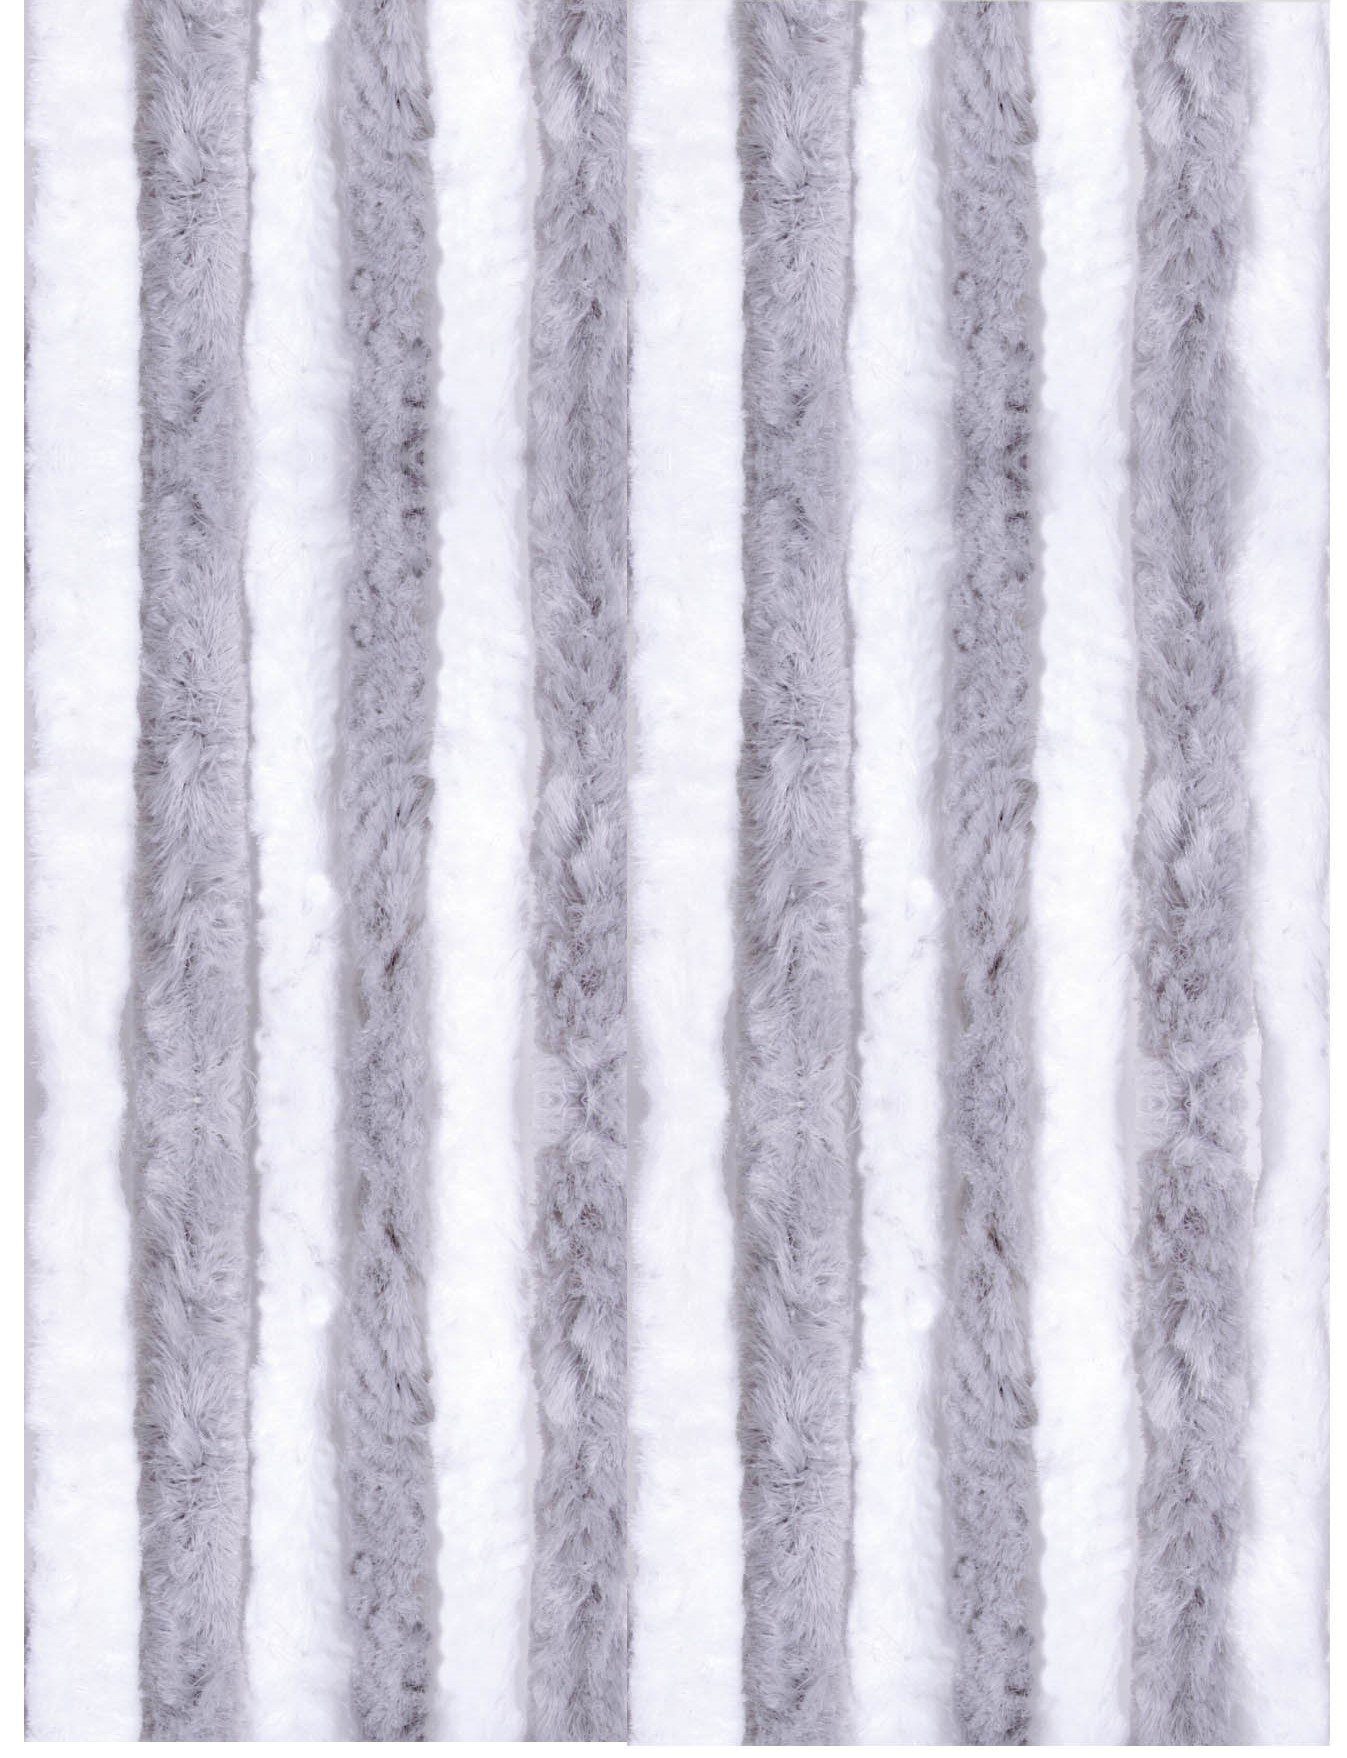 Türvorhang Flausch, Arsvita, Ösen (1 St), blickdicht, Flauschvorhang 100x200cm (BxL), perfekter Insekten- und Sichtschutz, viele versch. Farben verfügbar Hellgrau - Weiß